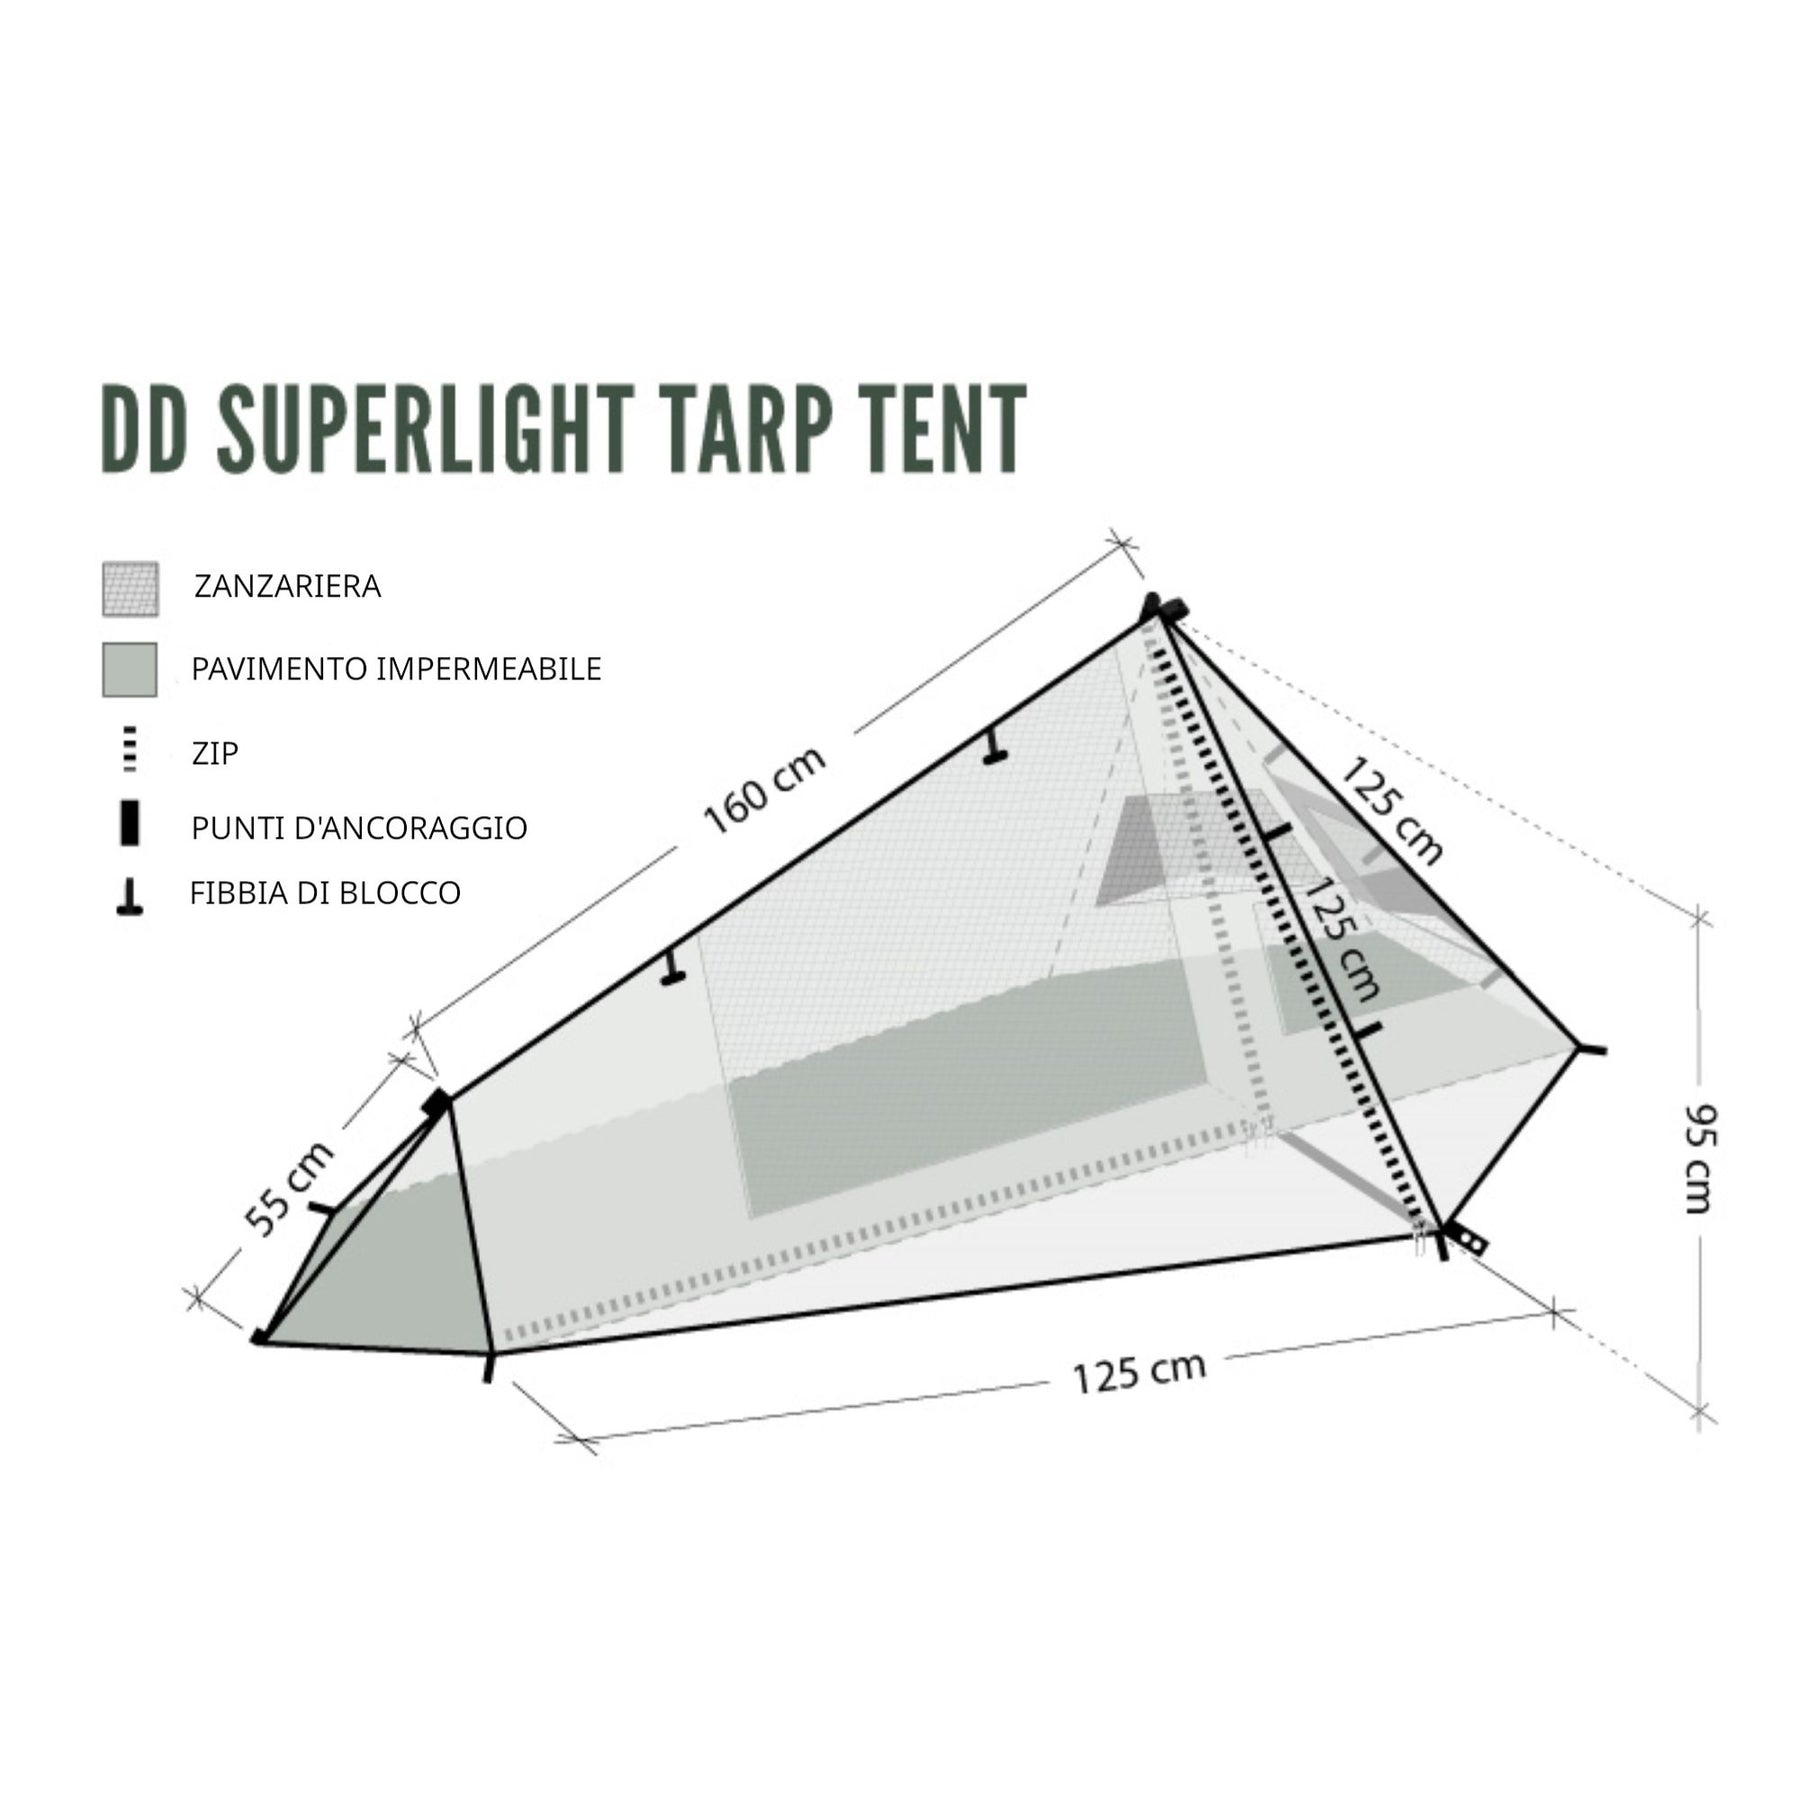 DD | SUPERLIGHT TARP TENT